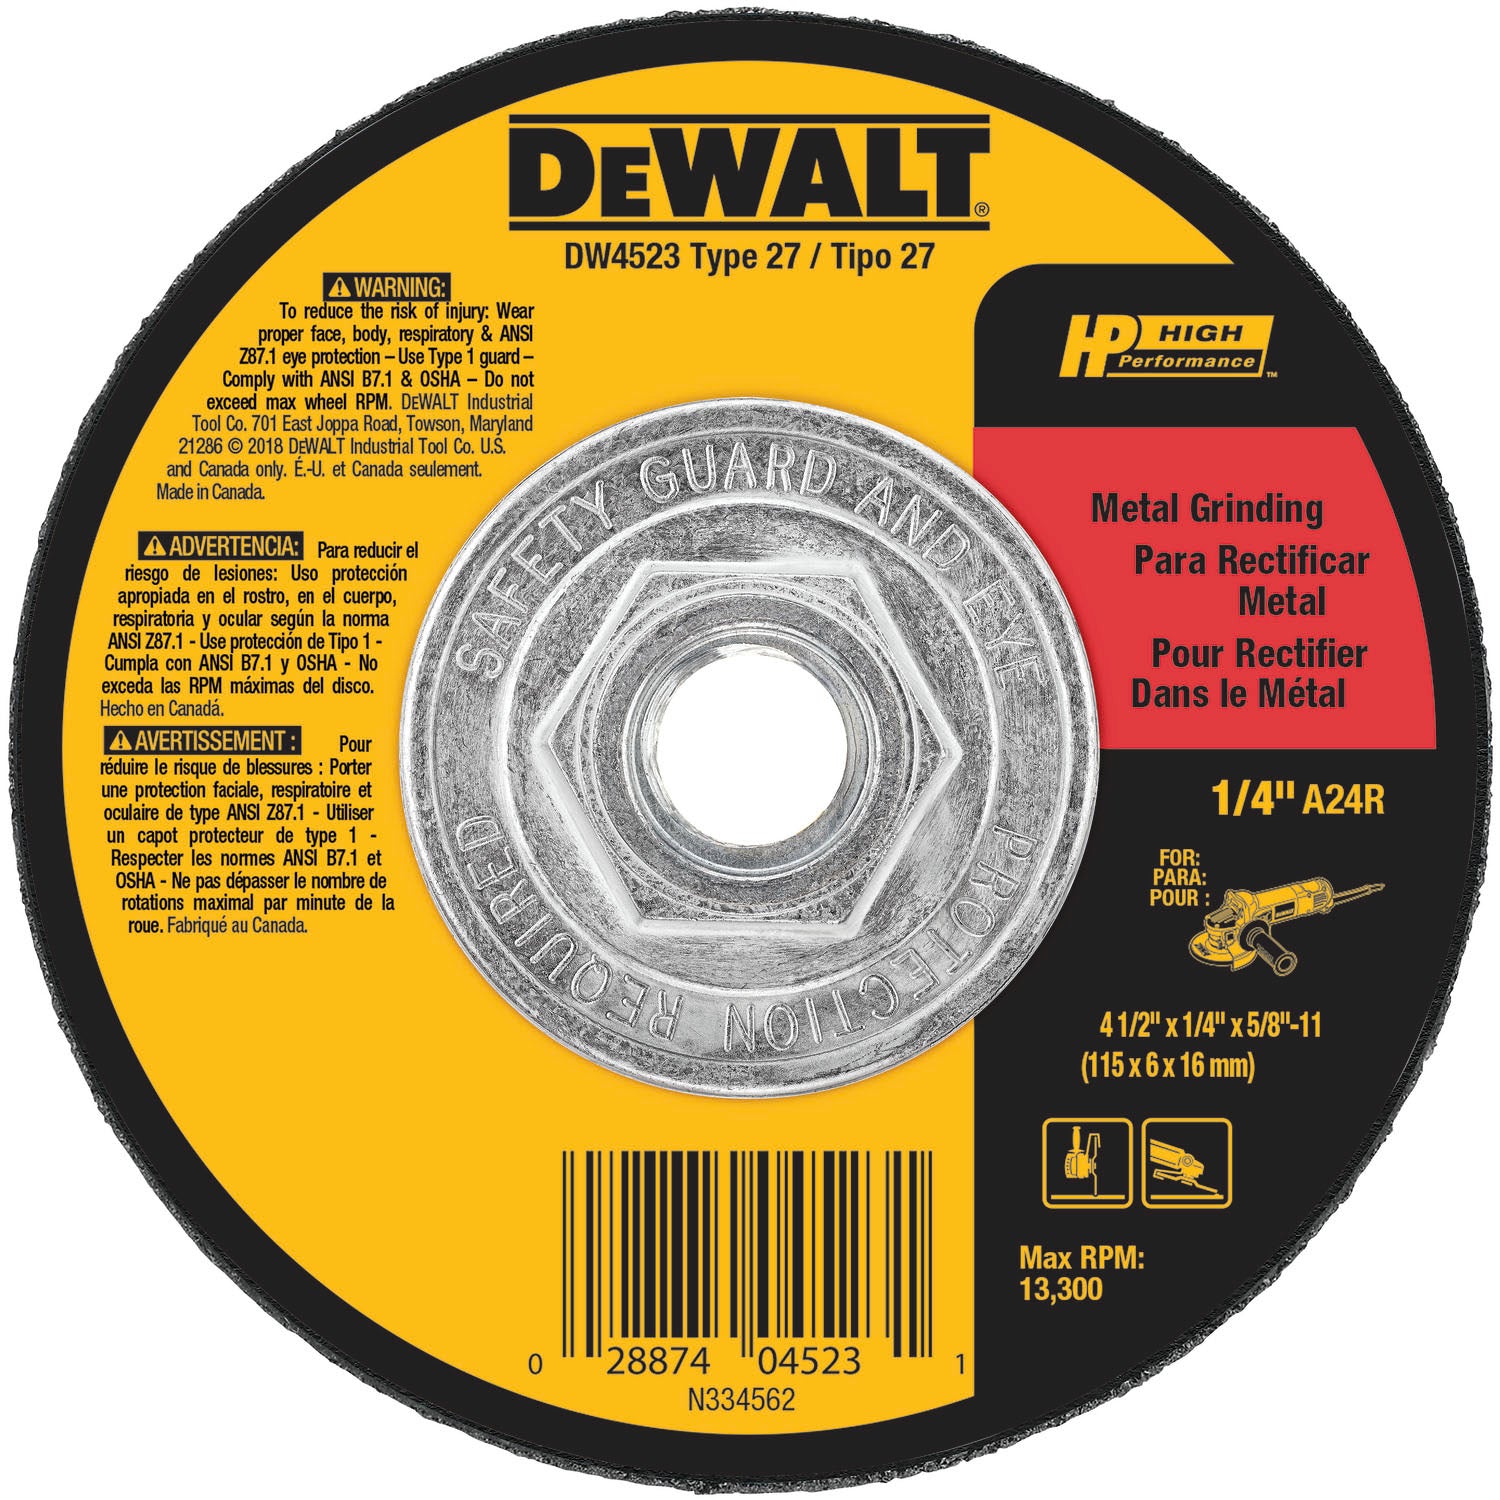 Dewalt DW4523 High Performance Metal Grinding Wheel 4-1/2